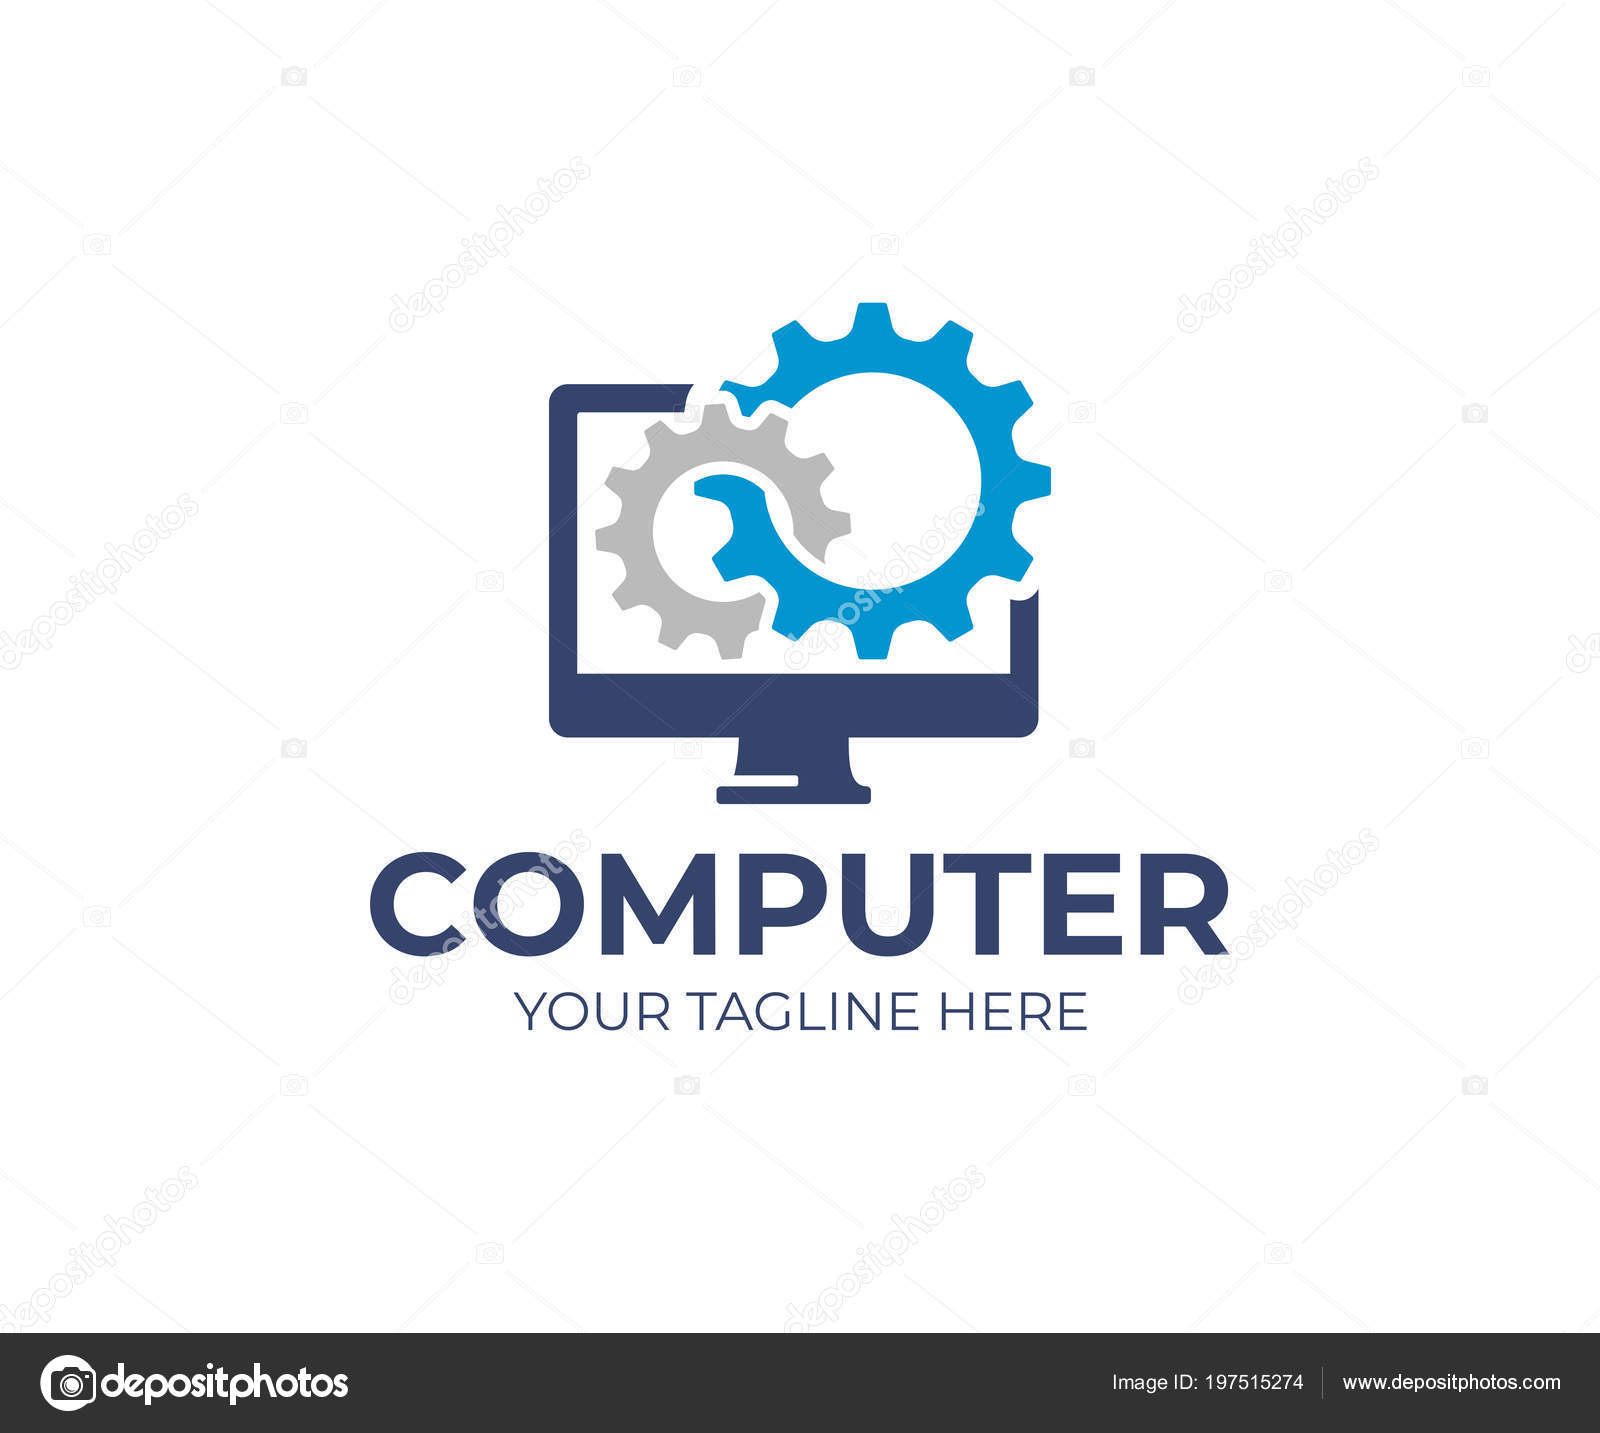 computer repair logo design